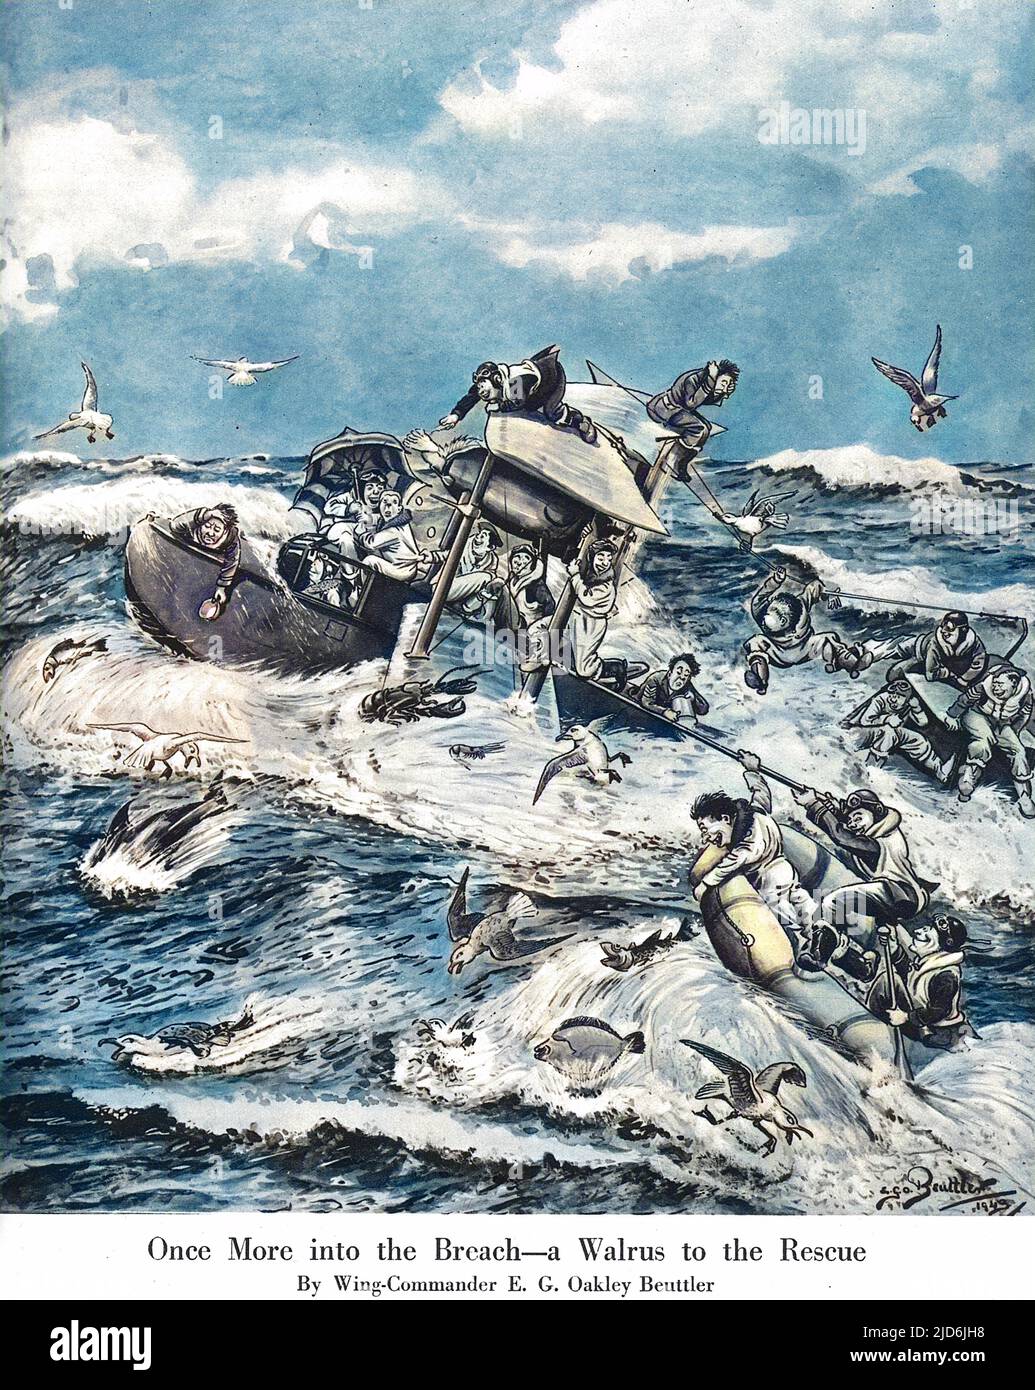 Humorvolle Illustration von Z. B. Oakley-Beuttler, die die Luft-See-Rettung durch einen Shagbat-Amphibienflugzeug (bekannt als Walrus) über der Nordsee während des Zweiten Weltkriegs darstellt. Als das Flugzeug acht Männer in einem Dingy ausfindig machte, stieg es auf das Meer und nahm sie alle an Bord. Zu schwer, um auf rauer See abzuheben, fuhr der Pilot über 60 Meilen zum Hafen. Kolorierte Version von: 11070697 Datum: 1943 Stockfoto